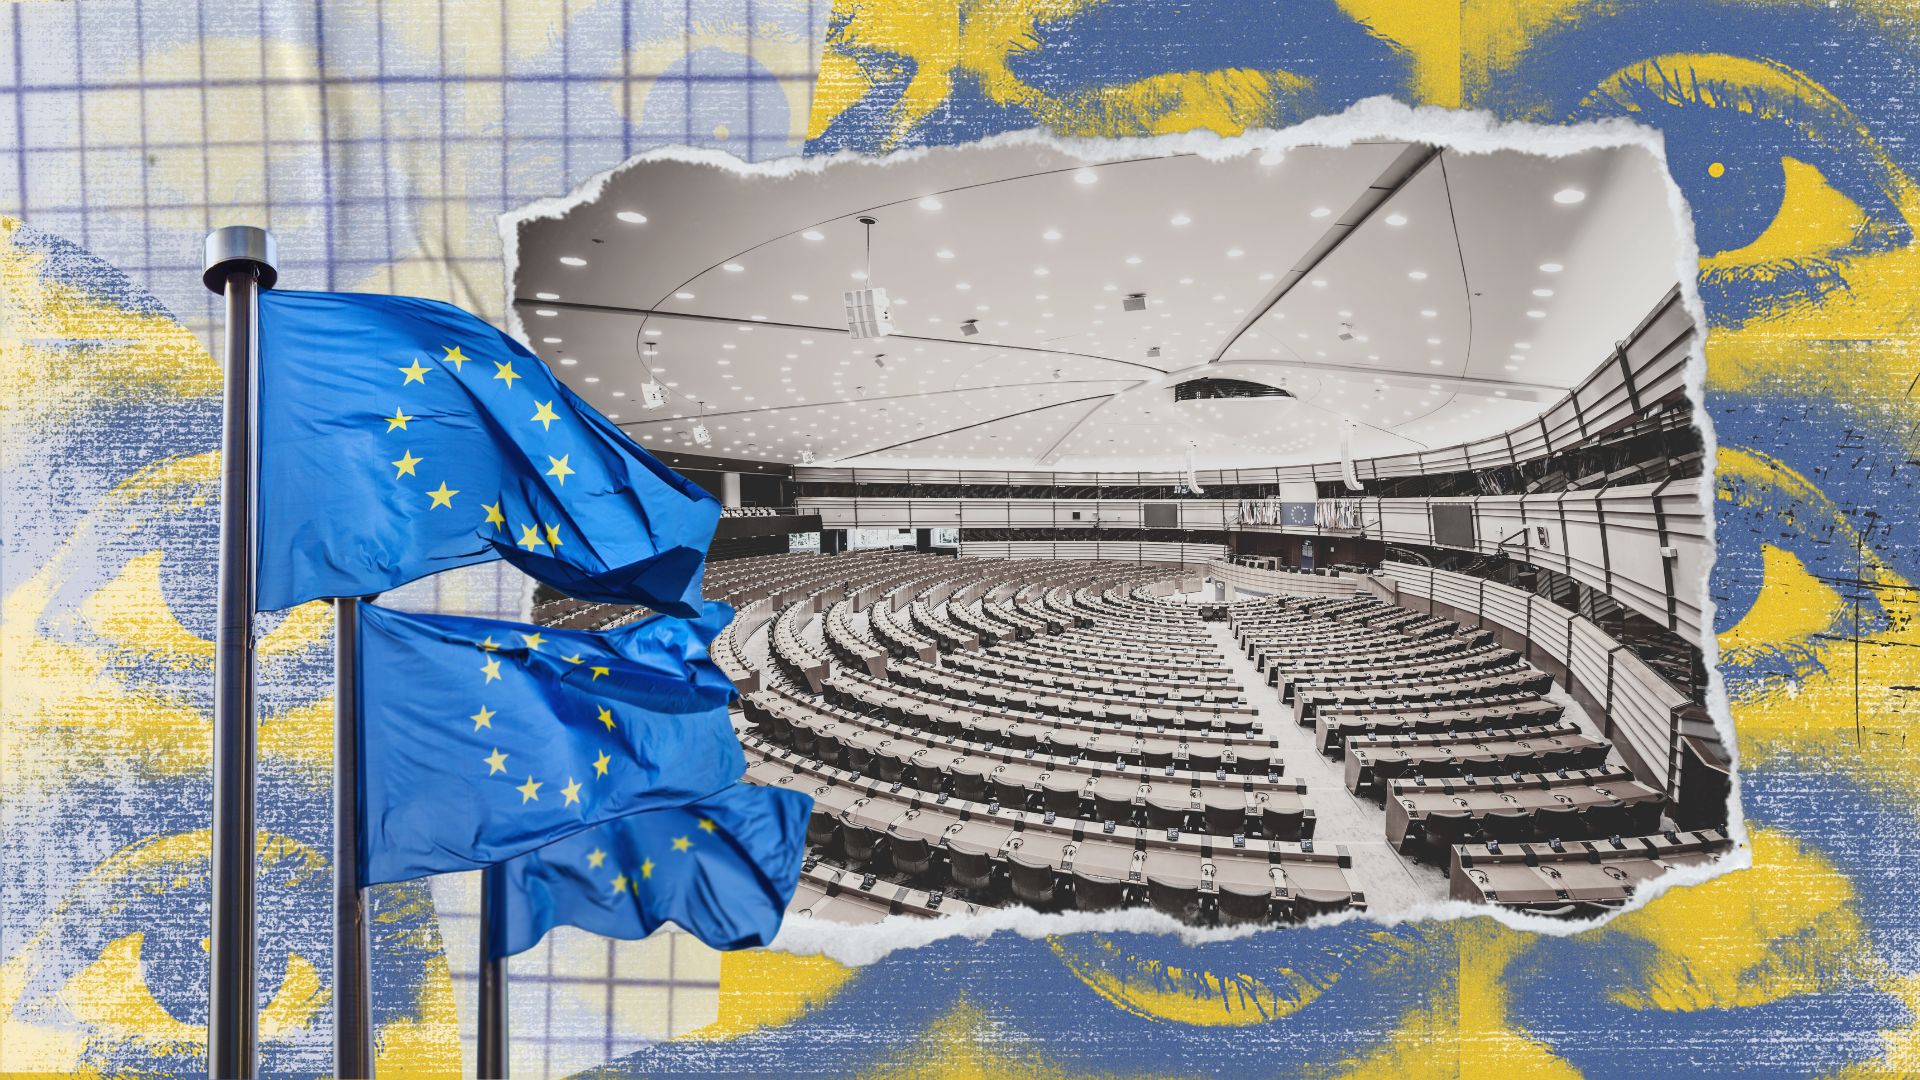 Τα επόμενα βήματα μετά τις Ευρωεκλογές: Πάρε-δώσε και υποσχέσεις για το ποιος θα κάτσει στα καίρια πόστα